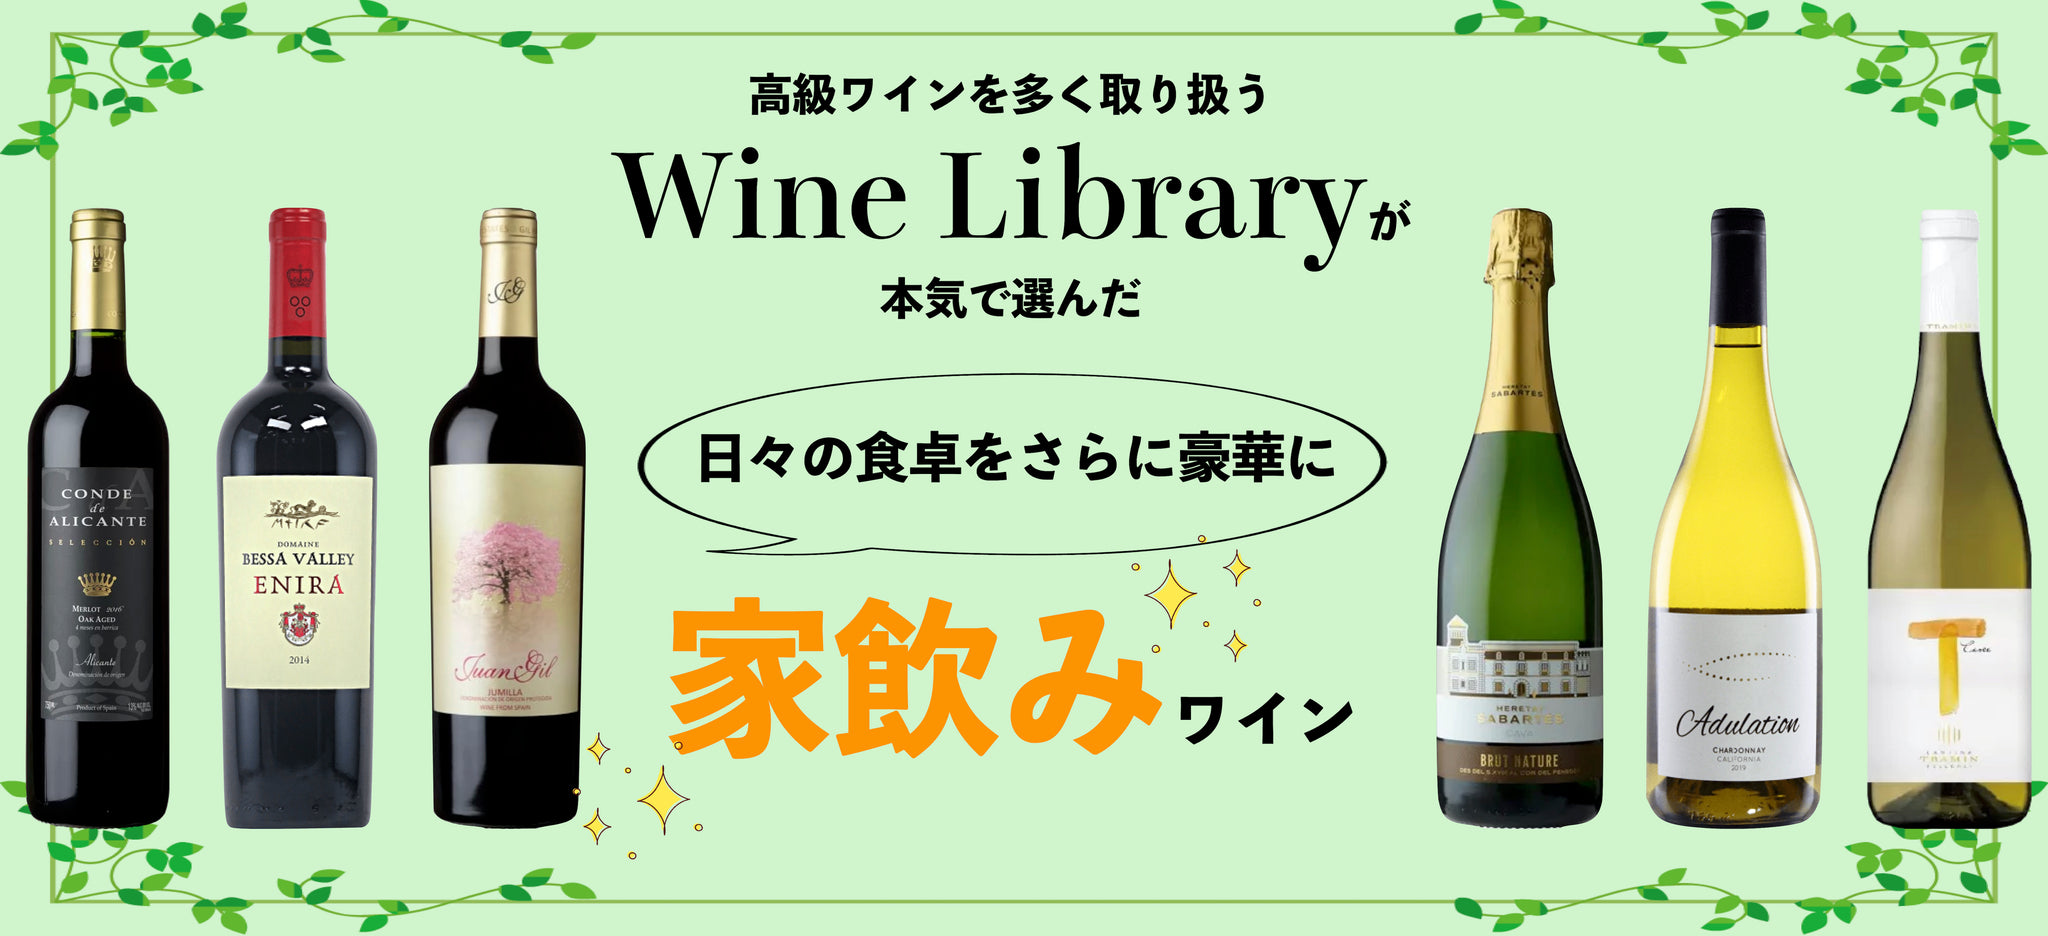 高級ワインを多く取り扱う Wine Library が本気で選んだ家飲みワイン